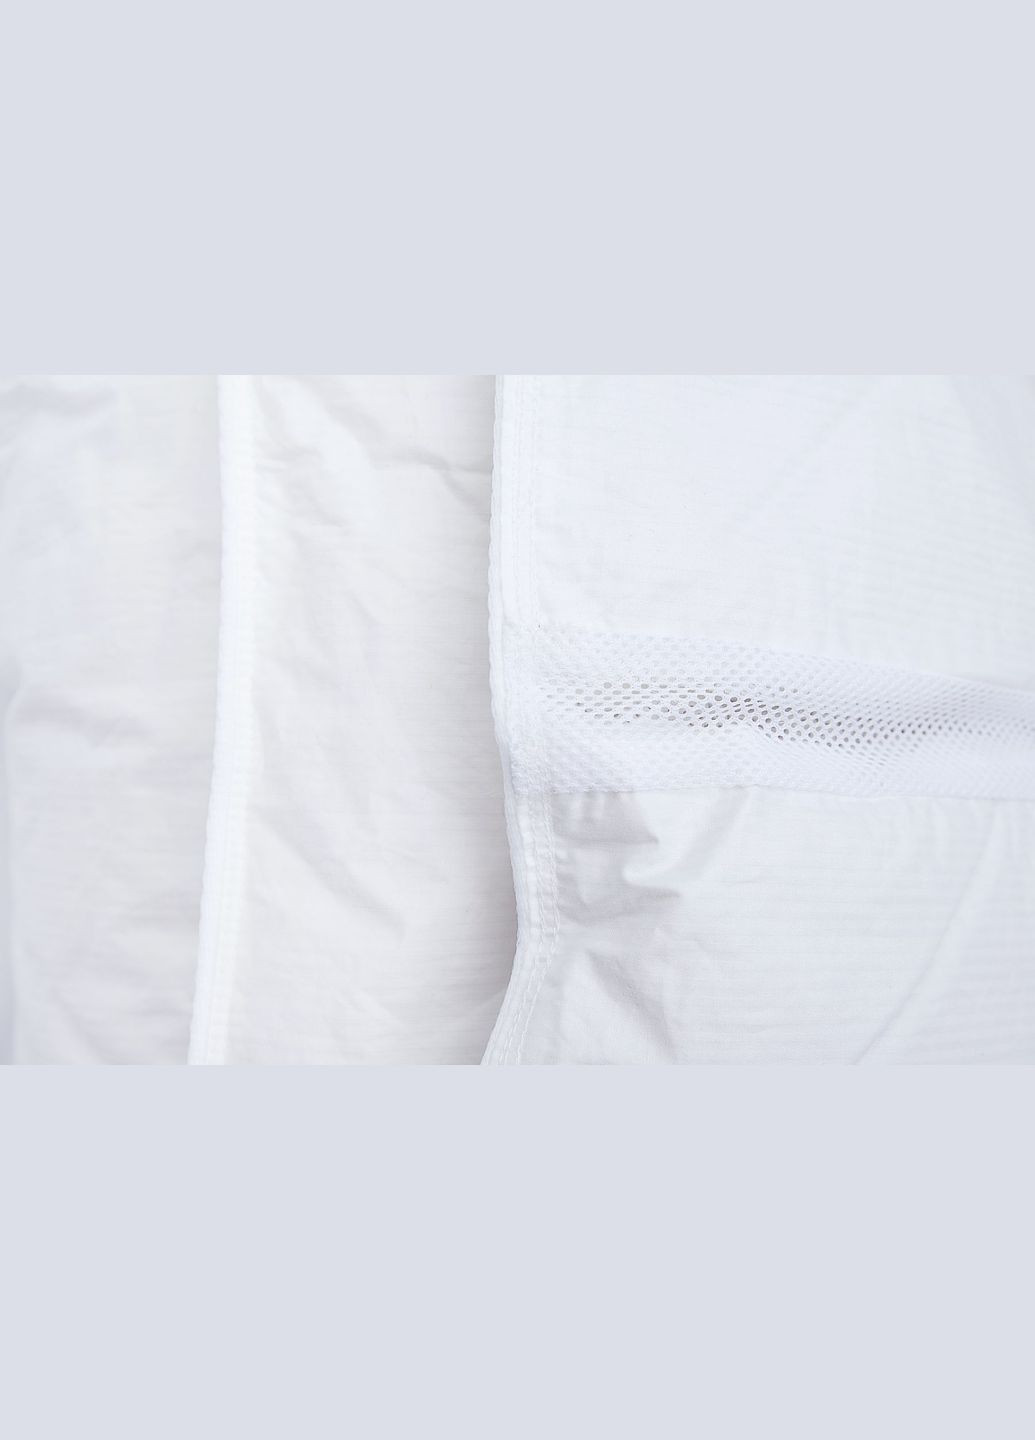 Демисезонное одеяло со 100% белым гусиным пухом двуспальное Climatecomfort 220х240 (220240110W) Iglen (282313160)